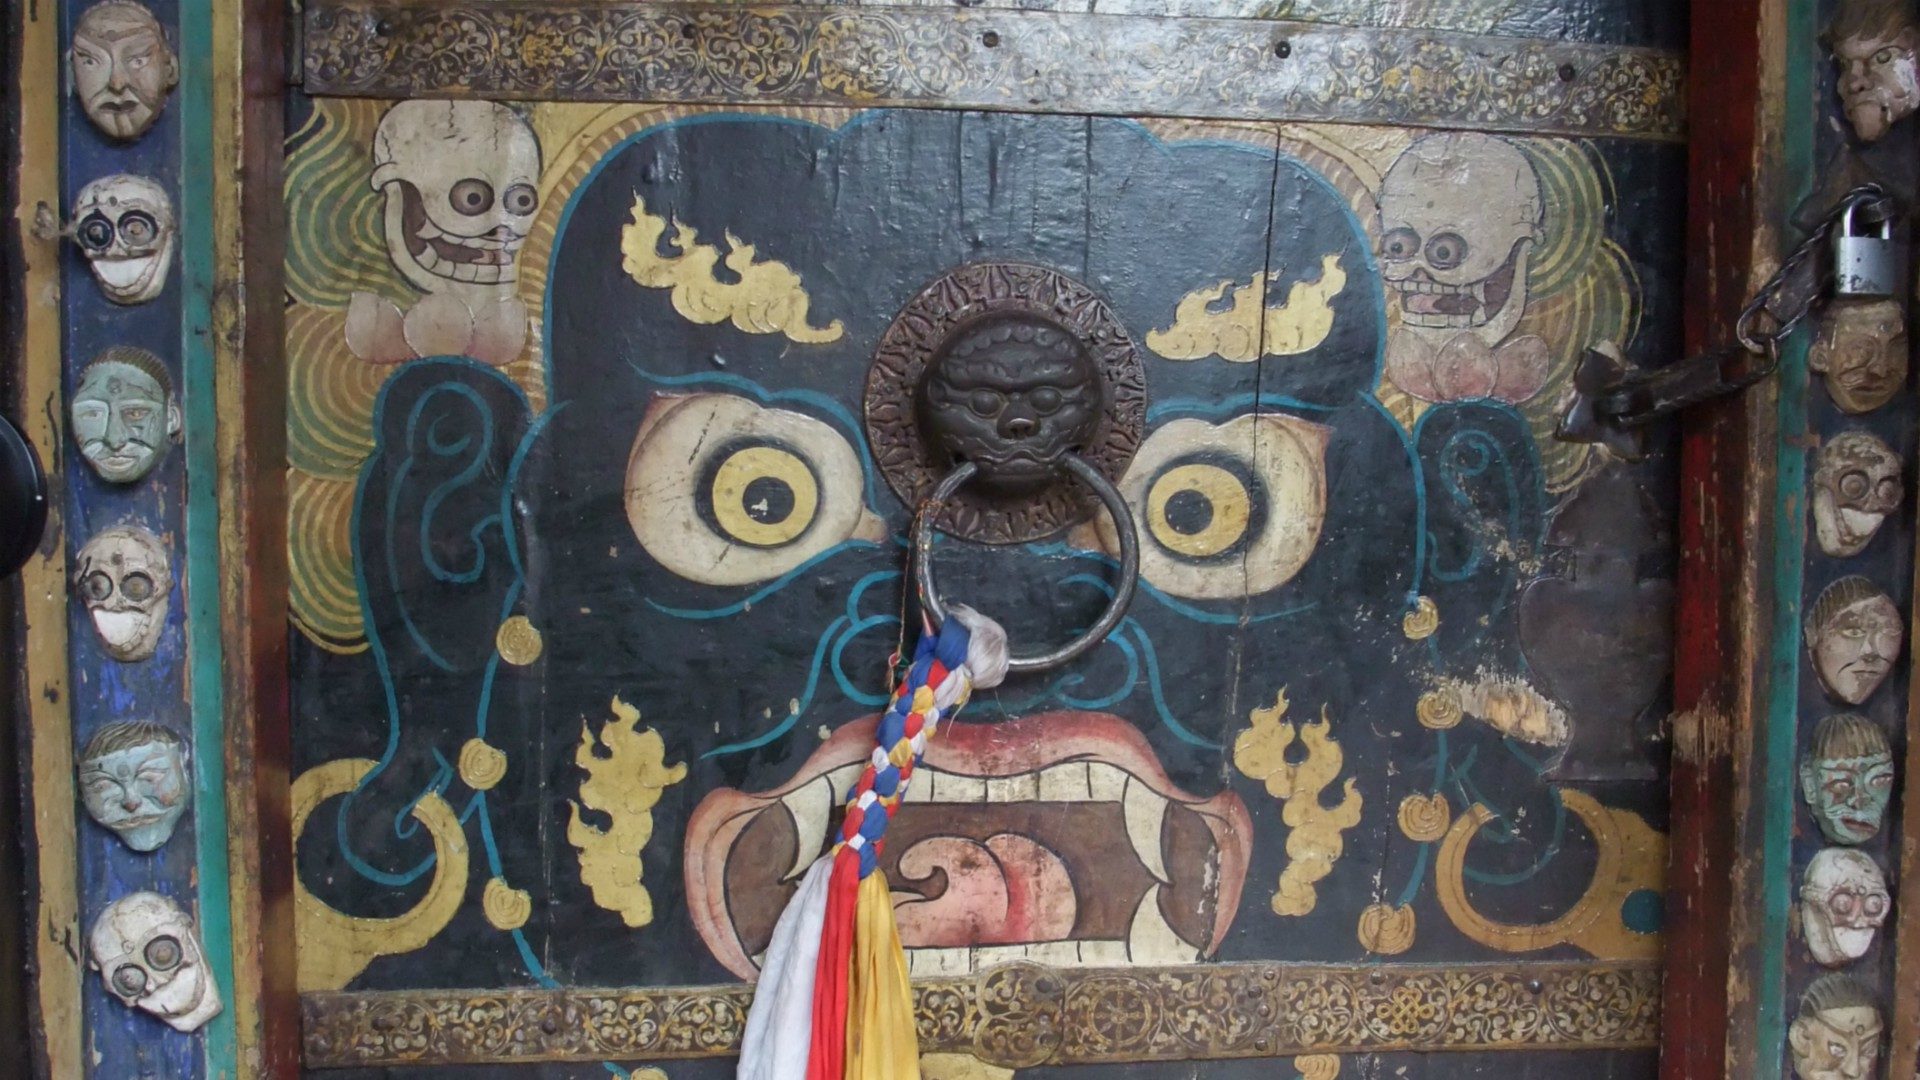 Divinité courroucée sur la porte d'un temple, au Tibet (Photo:So_P/Flickr/CC BY 2.0)